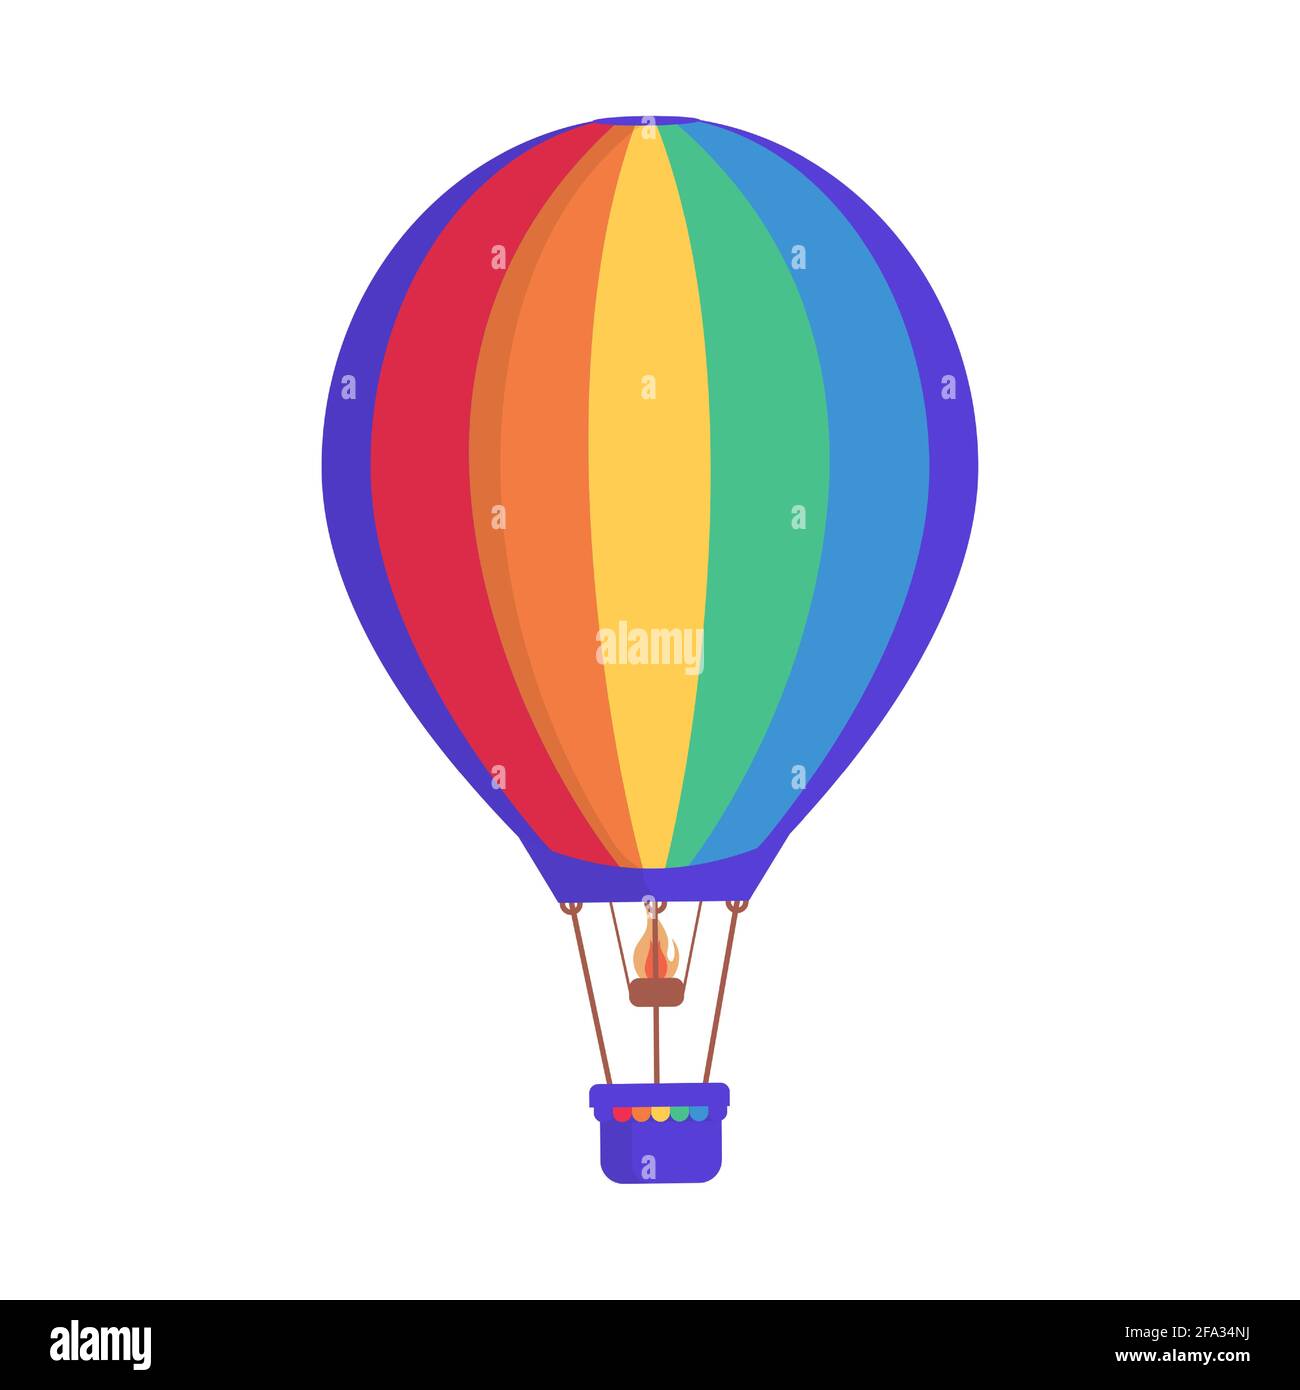 Pallone ad aria calda con colorate strisce arcobaleno vettore piatta illustrazione isolato su sfondo bianco. Trasporto aereo per viaggi, viaggi estivi, weekend perfetto e attività ricreative stagionali. Illustrazione Vettoriale